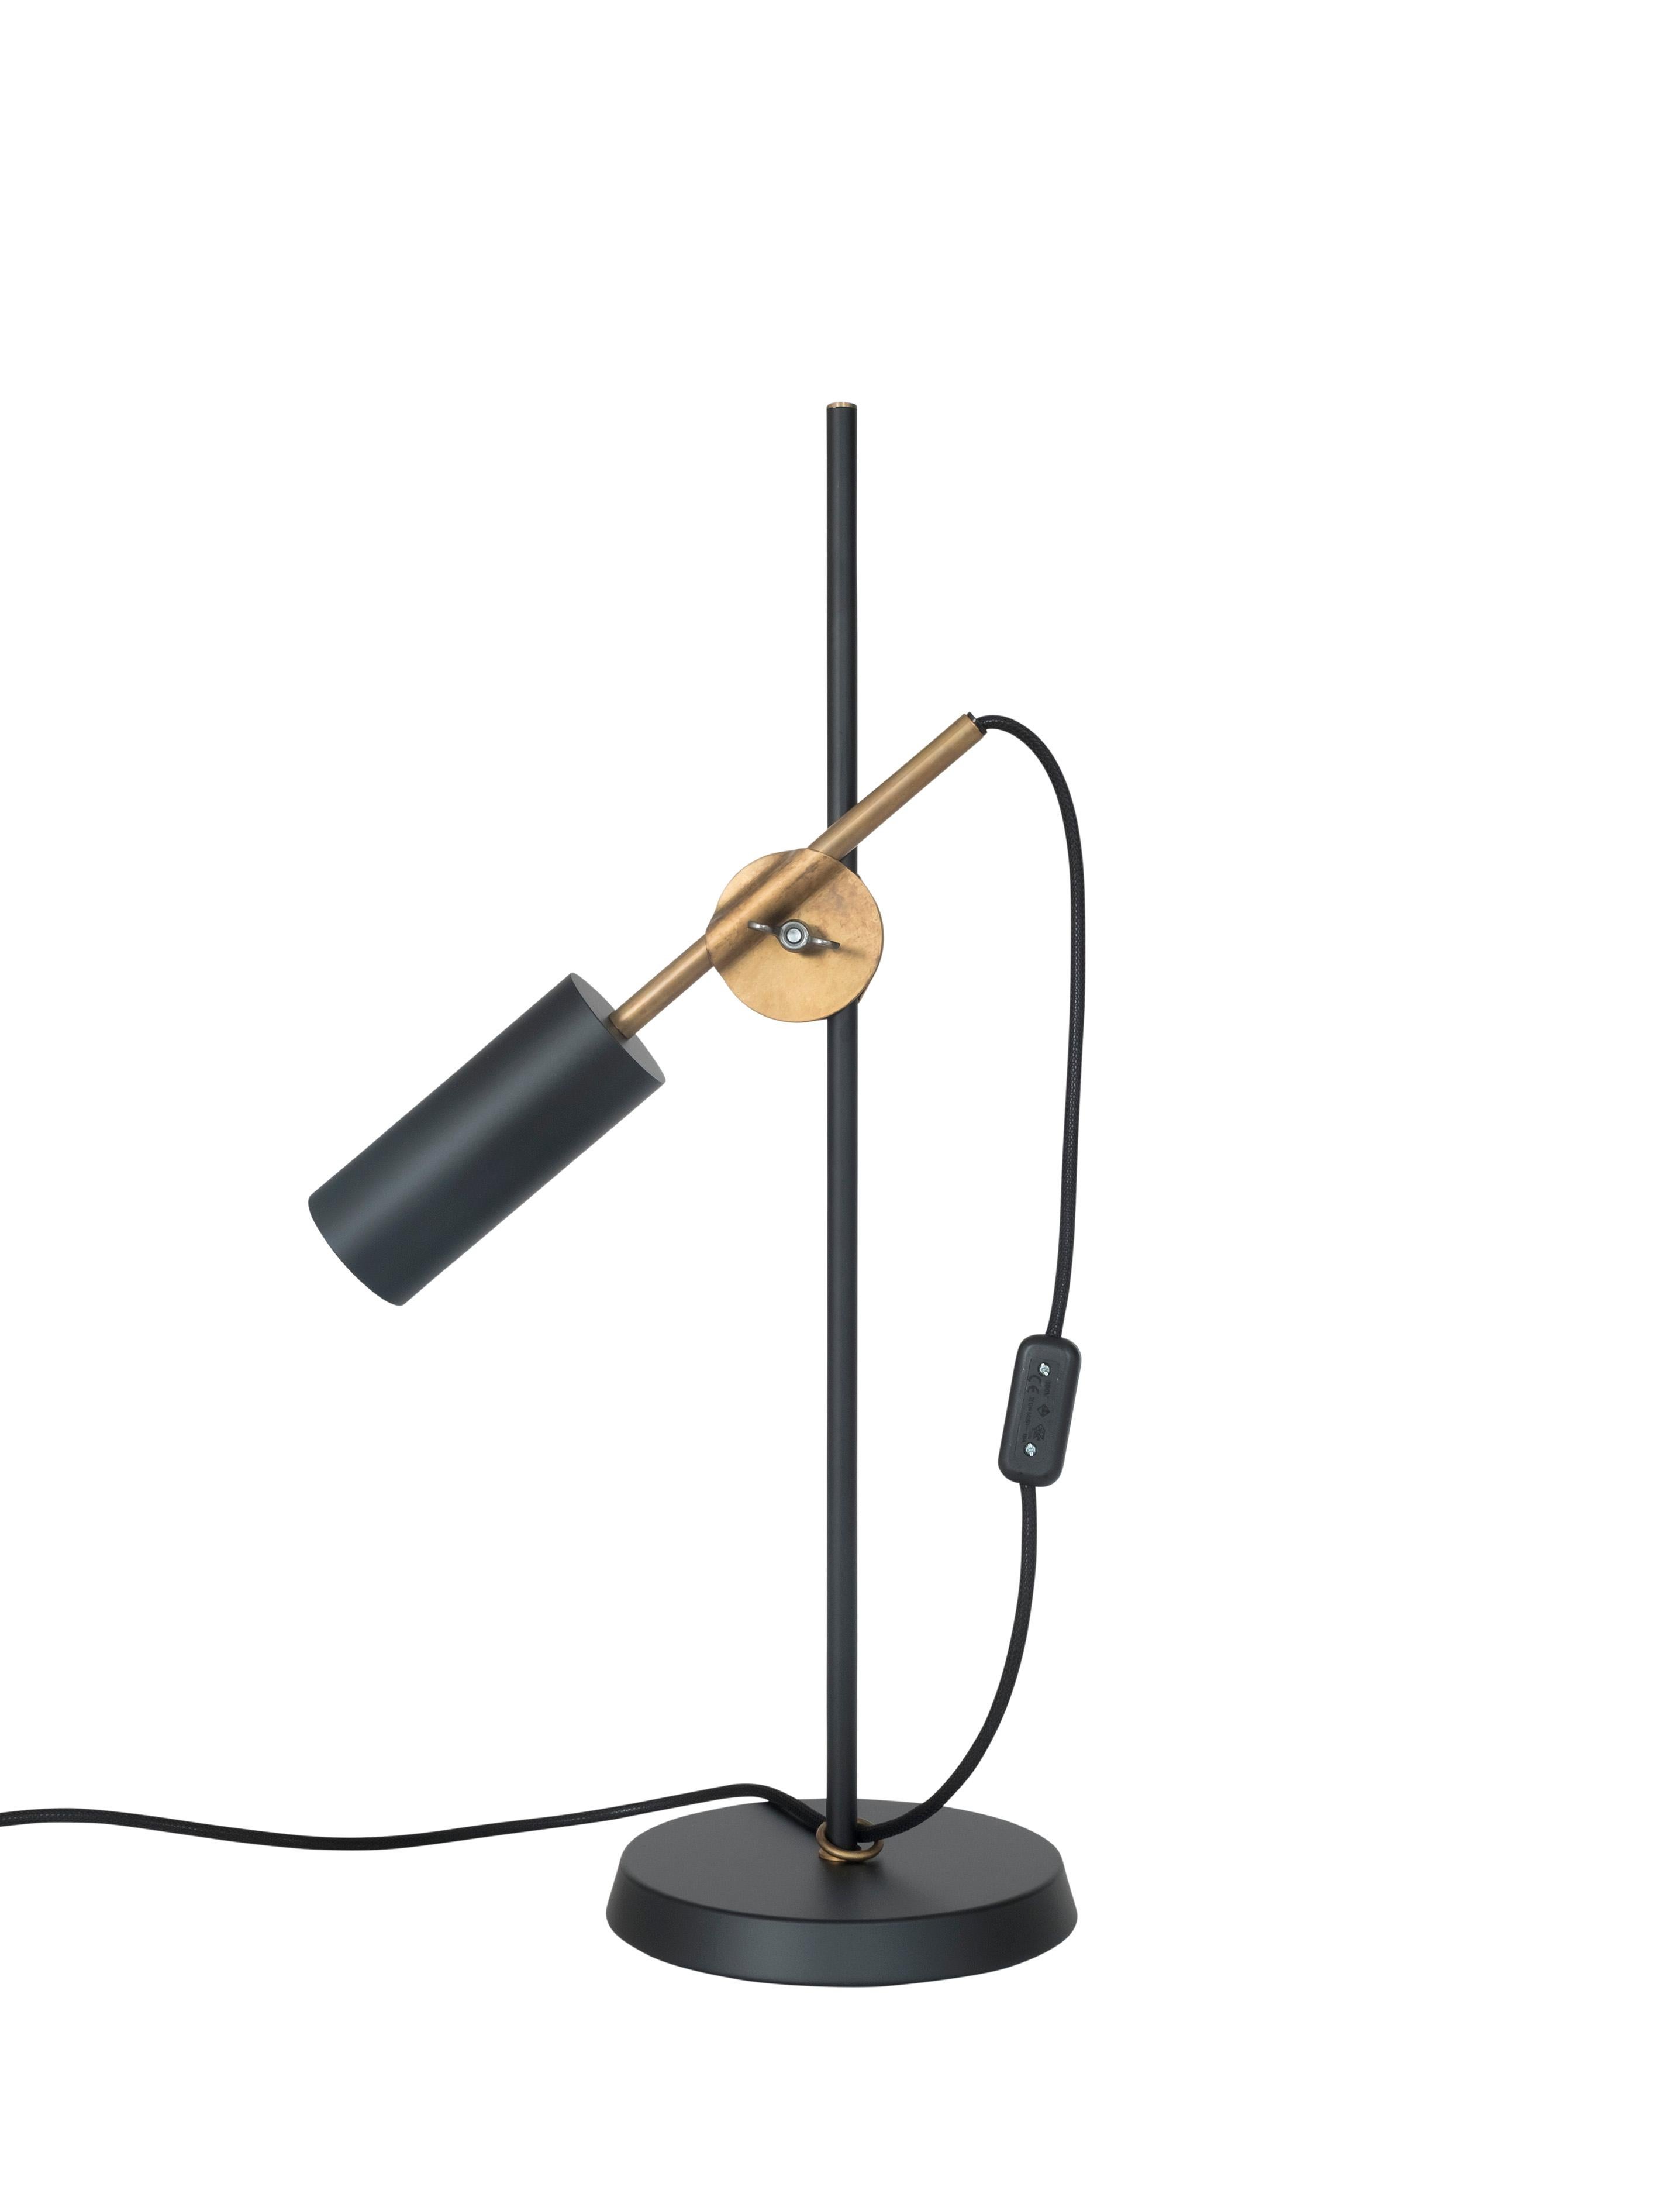 Johan Carpner Stav Black Table Lamp by Konsthantverk In New Condition For Sale In Barcelona, Barcelona